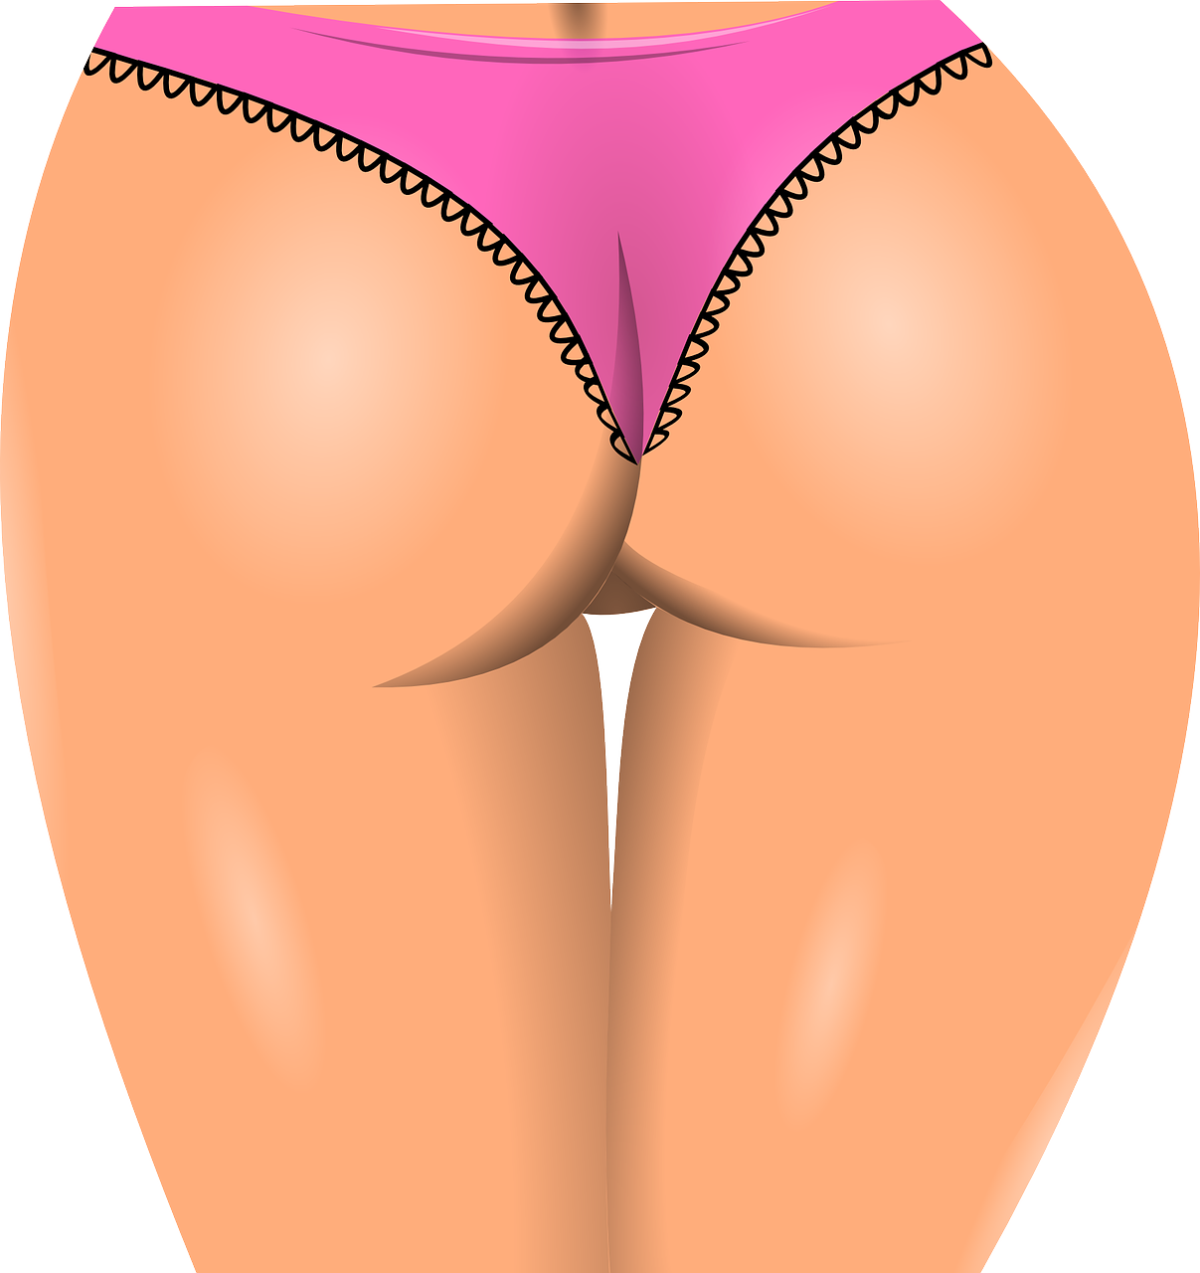 Brak aprobaty wyglądu warg sromowych są powodami konsultacji kobiet z ginekologiem lub chirurgiem plastycznym.